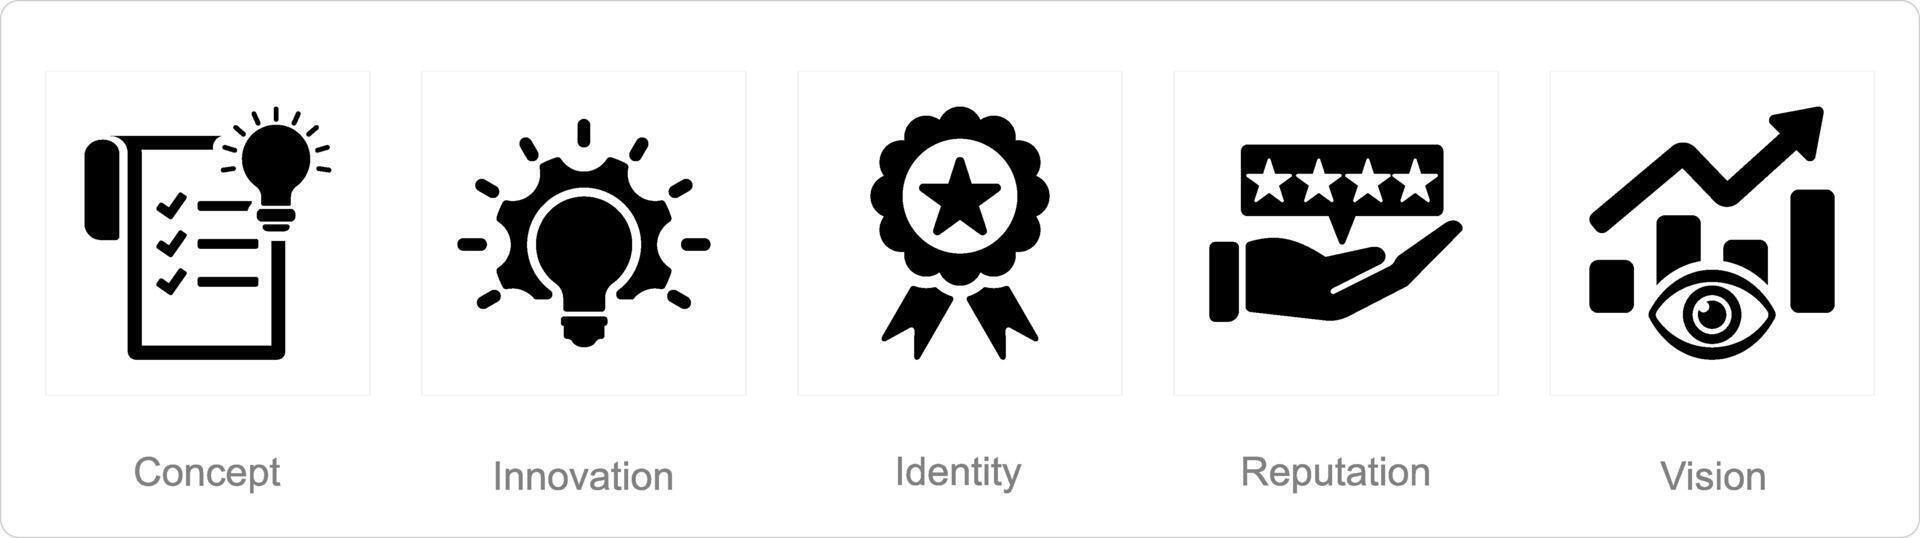 uma conjunto do 5 branding ícones Como conceito, inovação, identidade vetor